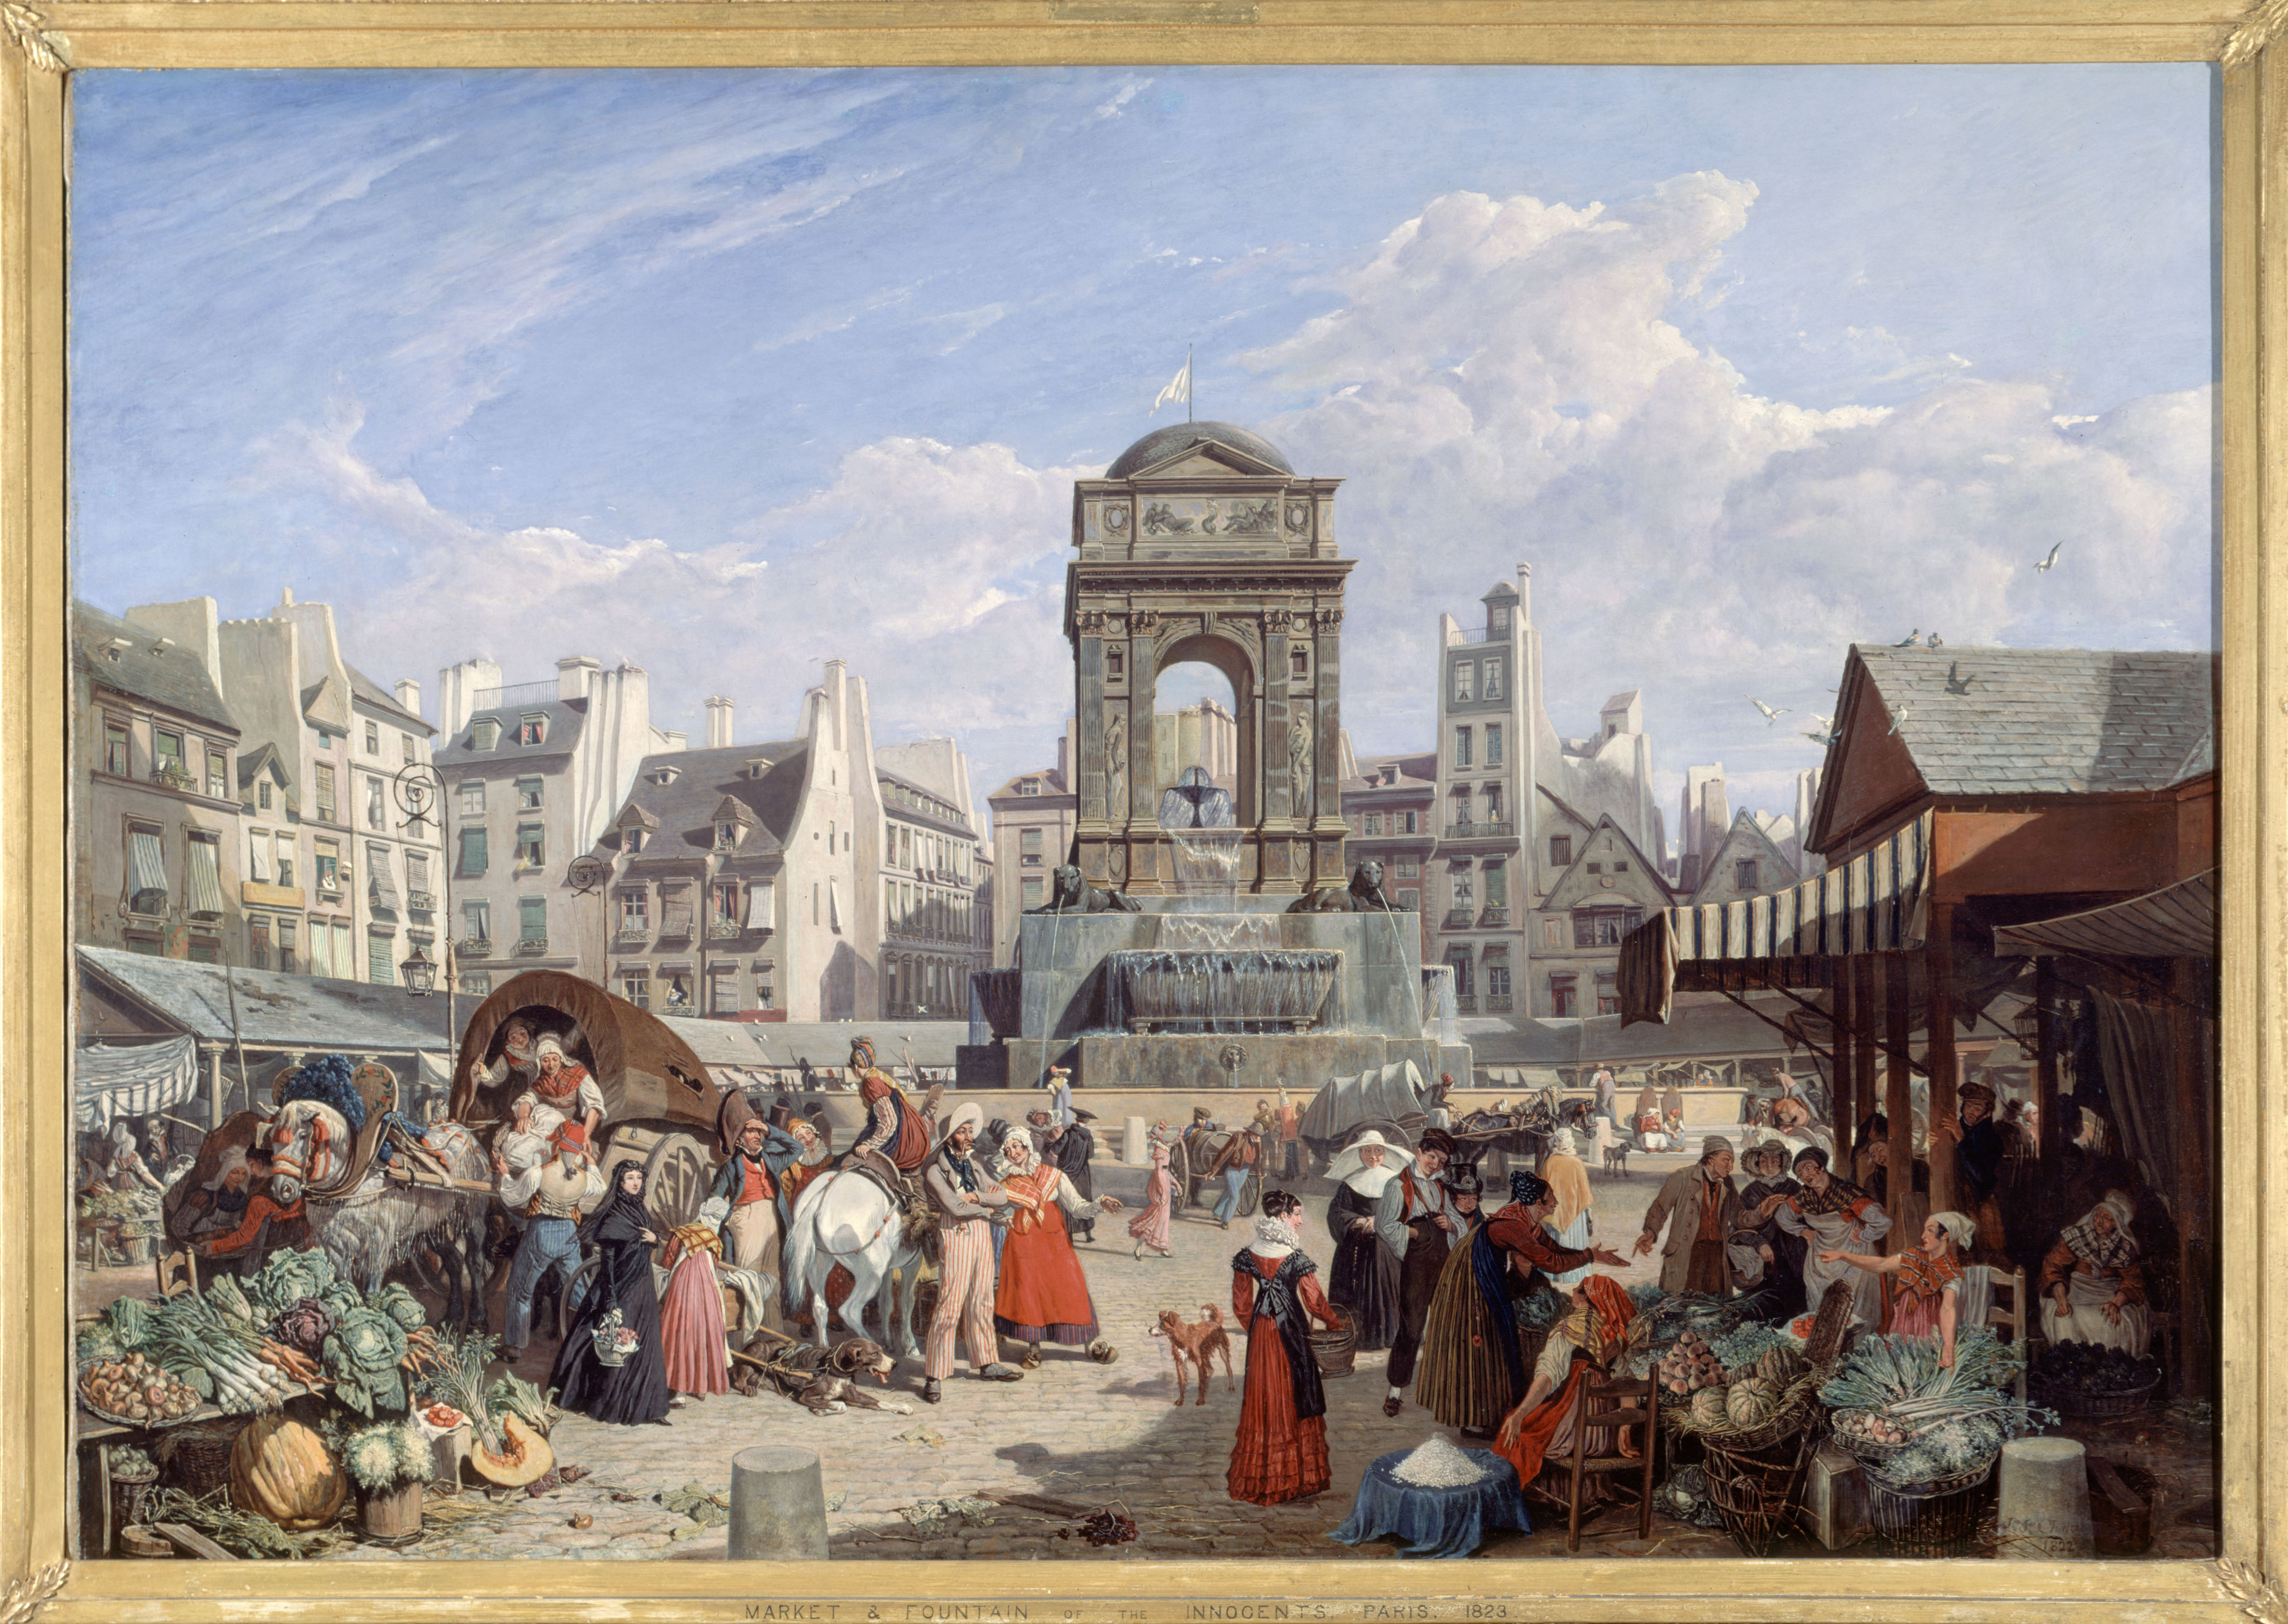 Le Marché et la fontaine des Innocents, 1822, John James Chalon (1778-1854) CC0 Paris Musées / Musée Carnavalet